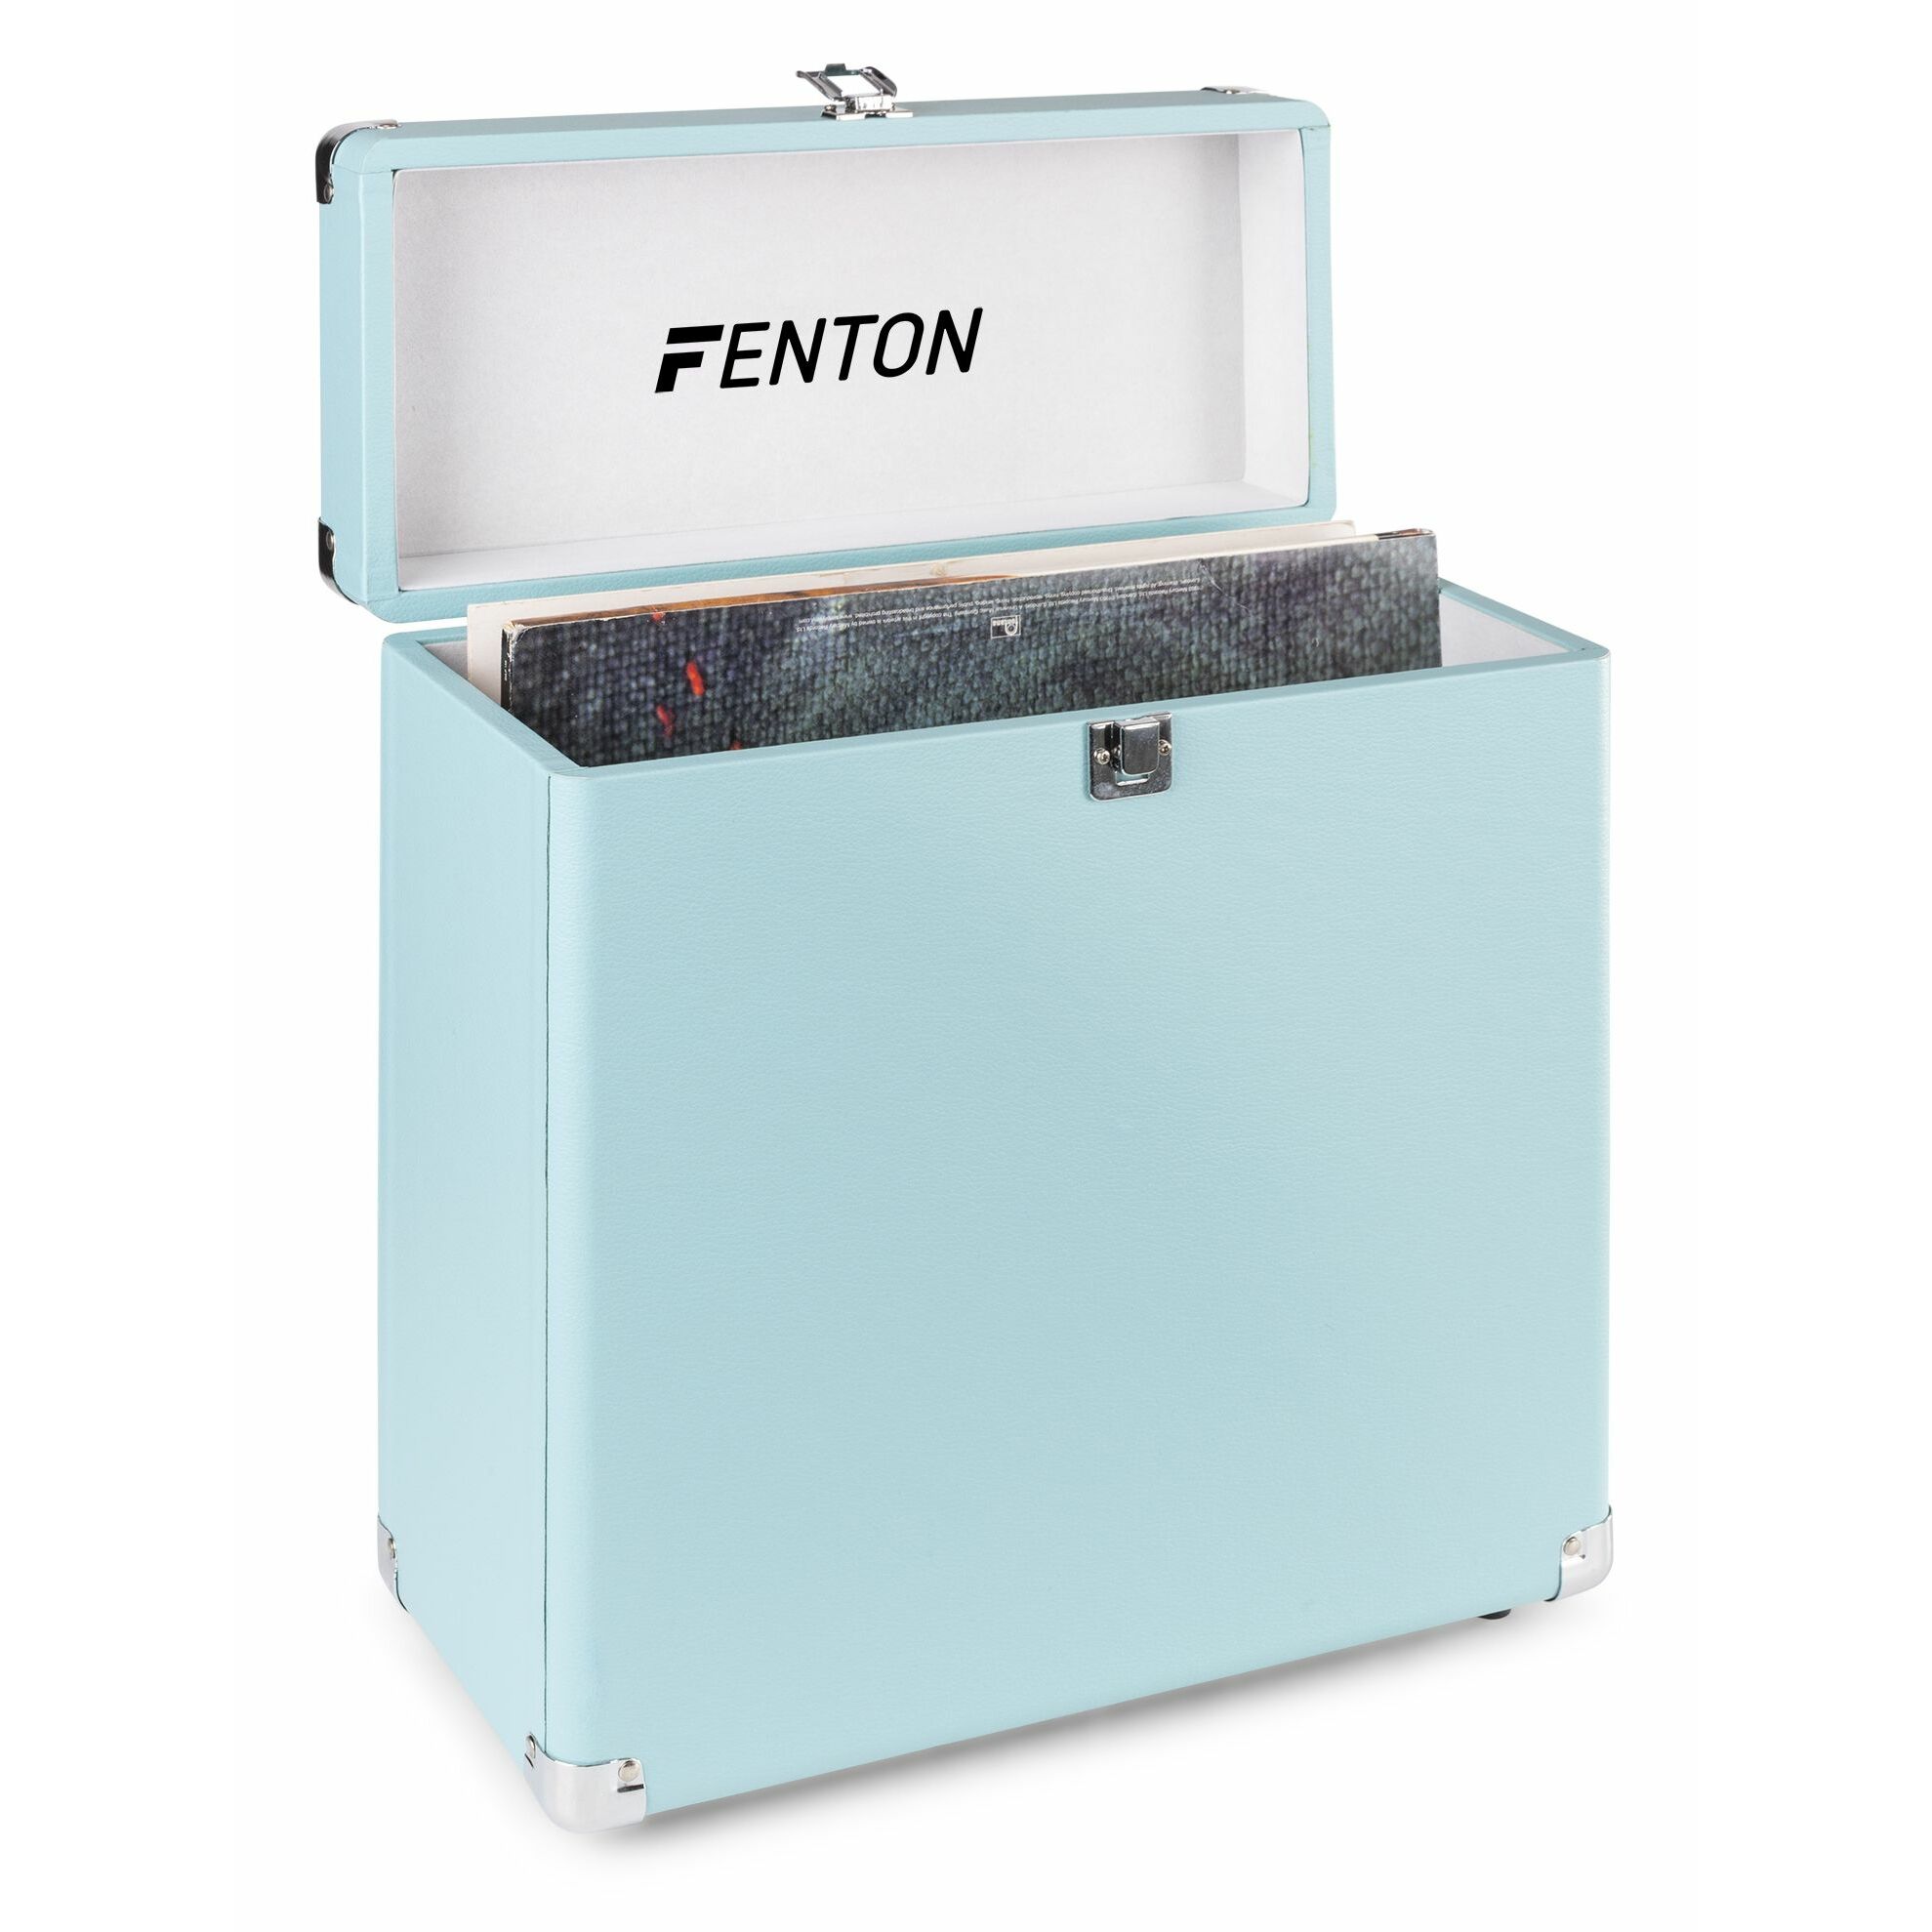 Fenton Retourdeal -  RC30 platenkoffer voor ruim 30 platen - Blauw